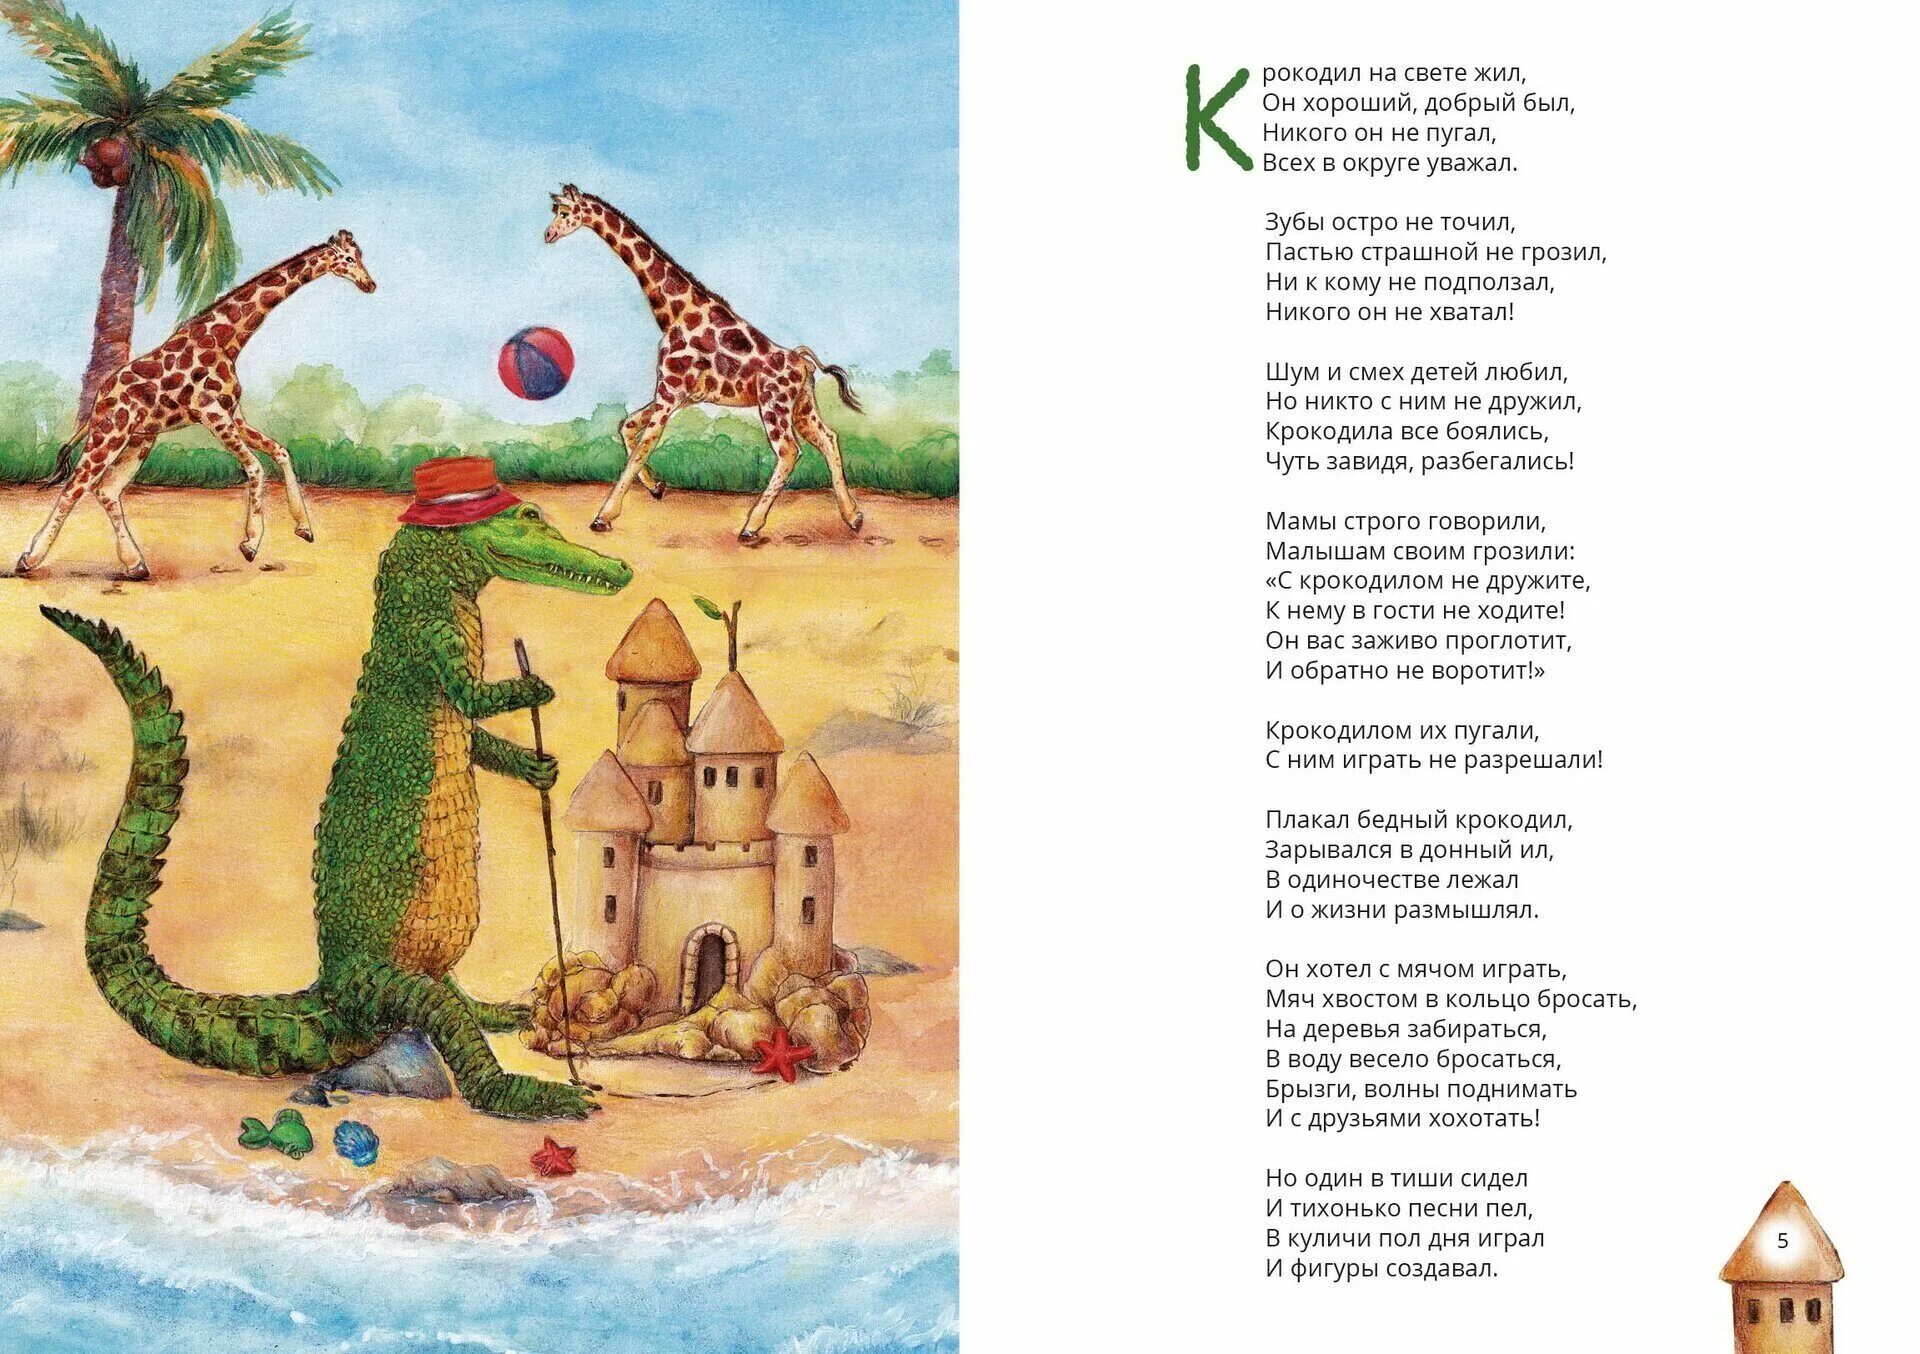 Песня про крокодила я иду по зоопарку. Стих про крокодила для детей. Загадка про крокодила. Песенки детские про крокодила. Крокодил сказка.